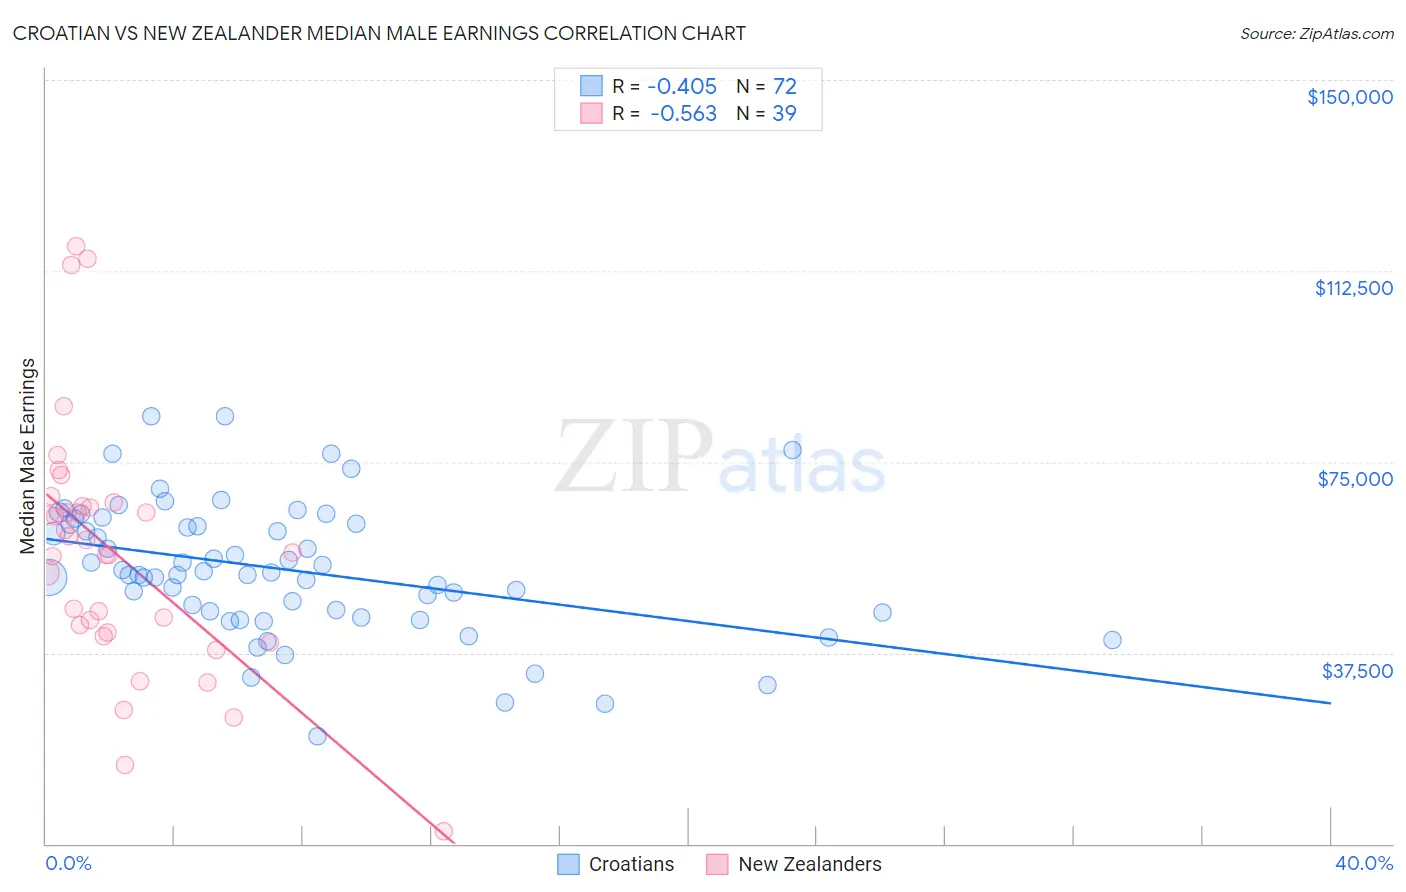 Croatian vs New Zealander Median Male Earnings